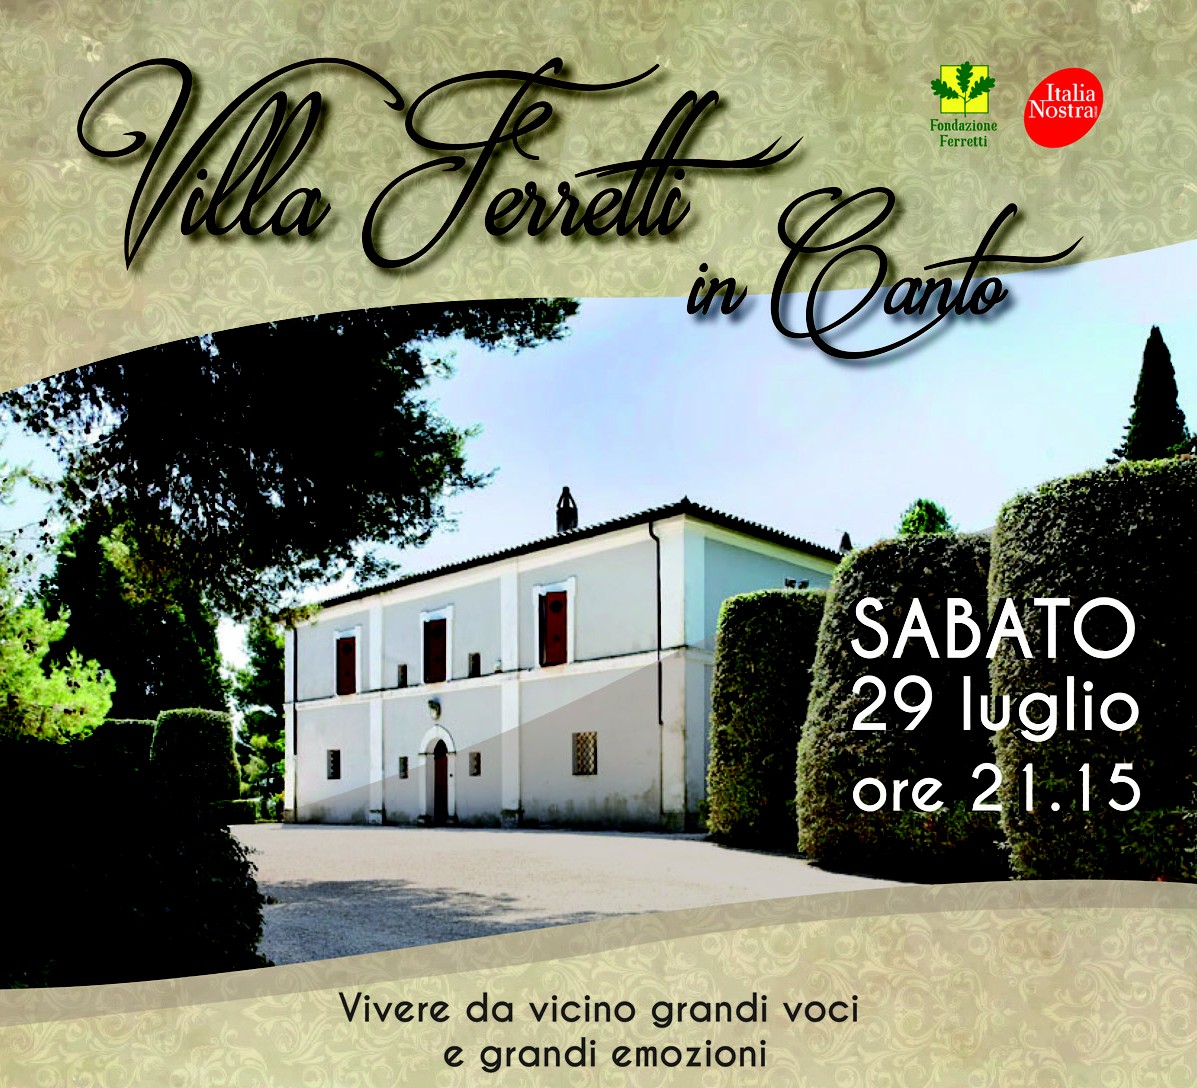 Villa Ferretti in Canto, prevendite in corso